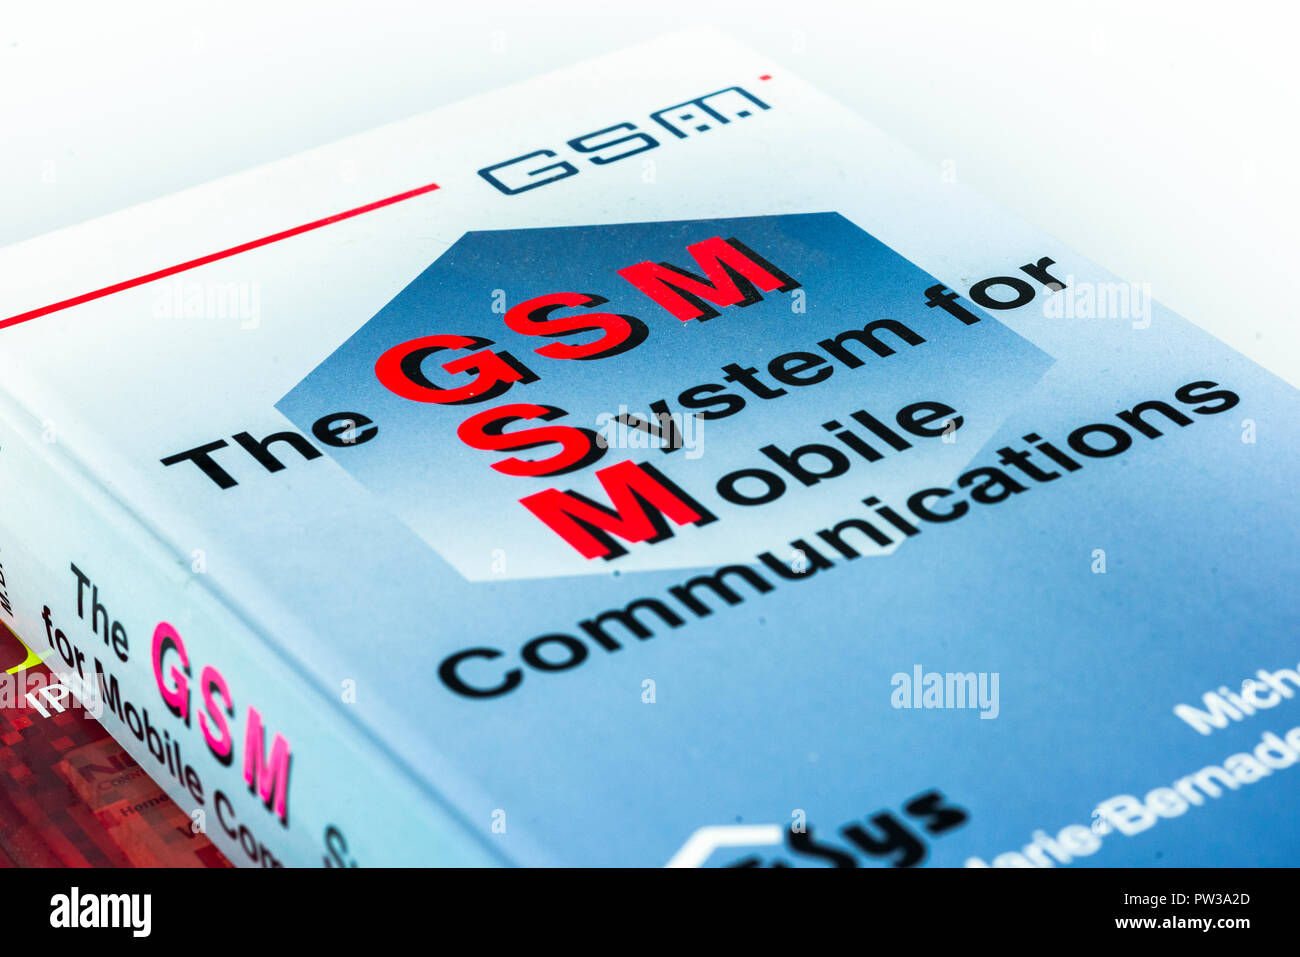 Technische Referenz Bücher über mobile Technologien für GSM-und IMS Stockfoto